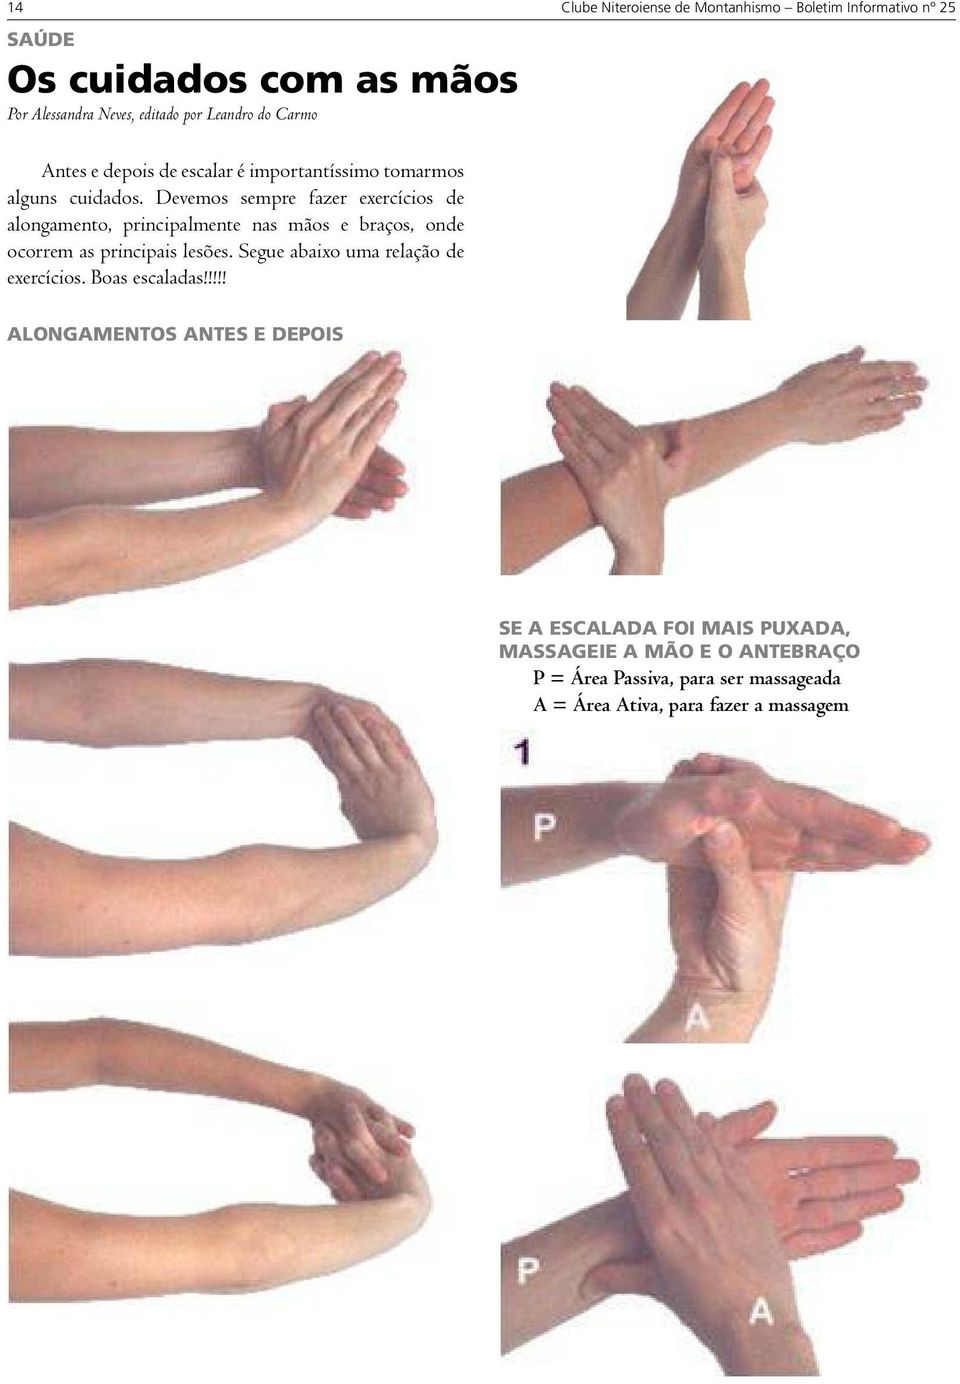 Devemos sempre fazer exercícios de alongamento, principalmente nas mãos e braços, onde ocorrem as principais lesões.